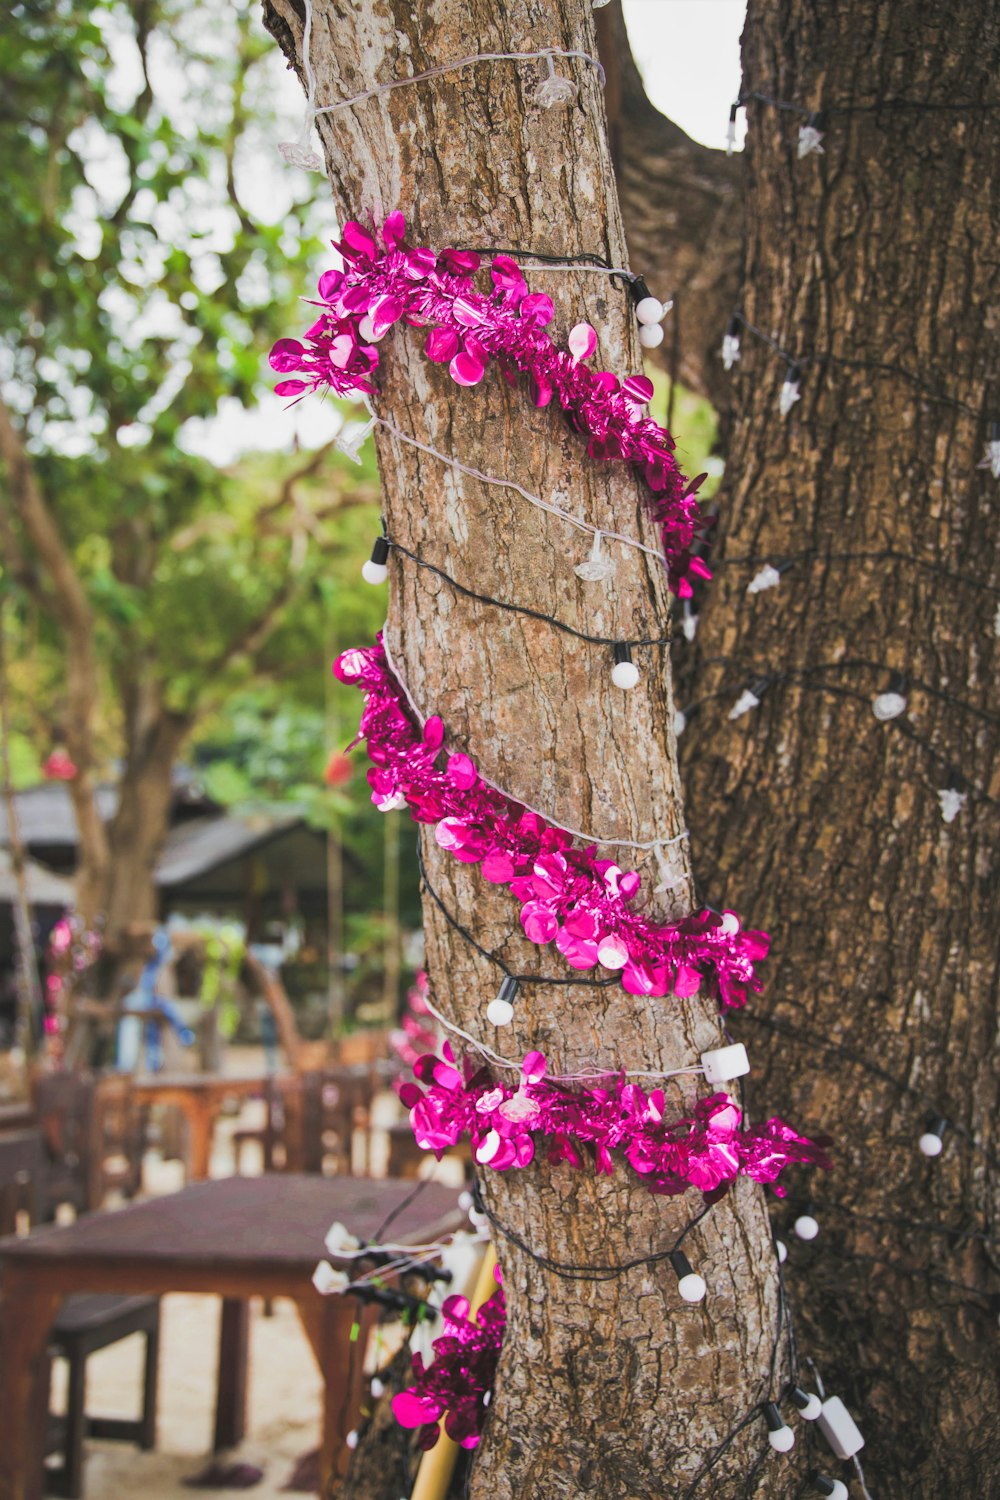 flores de pétalos púrpuras y mini guirnaldas de luces envueltas alrededor del tronco del árbol